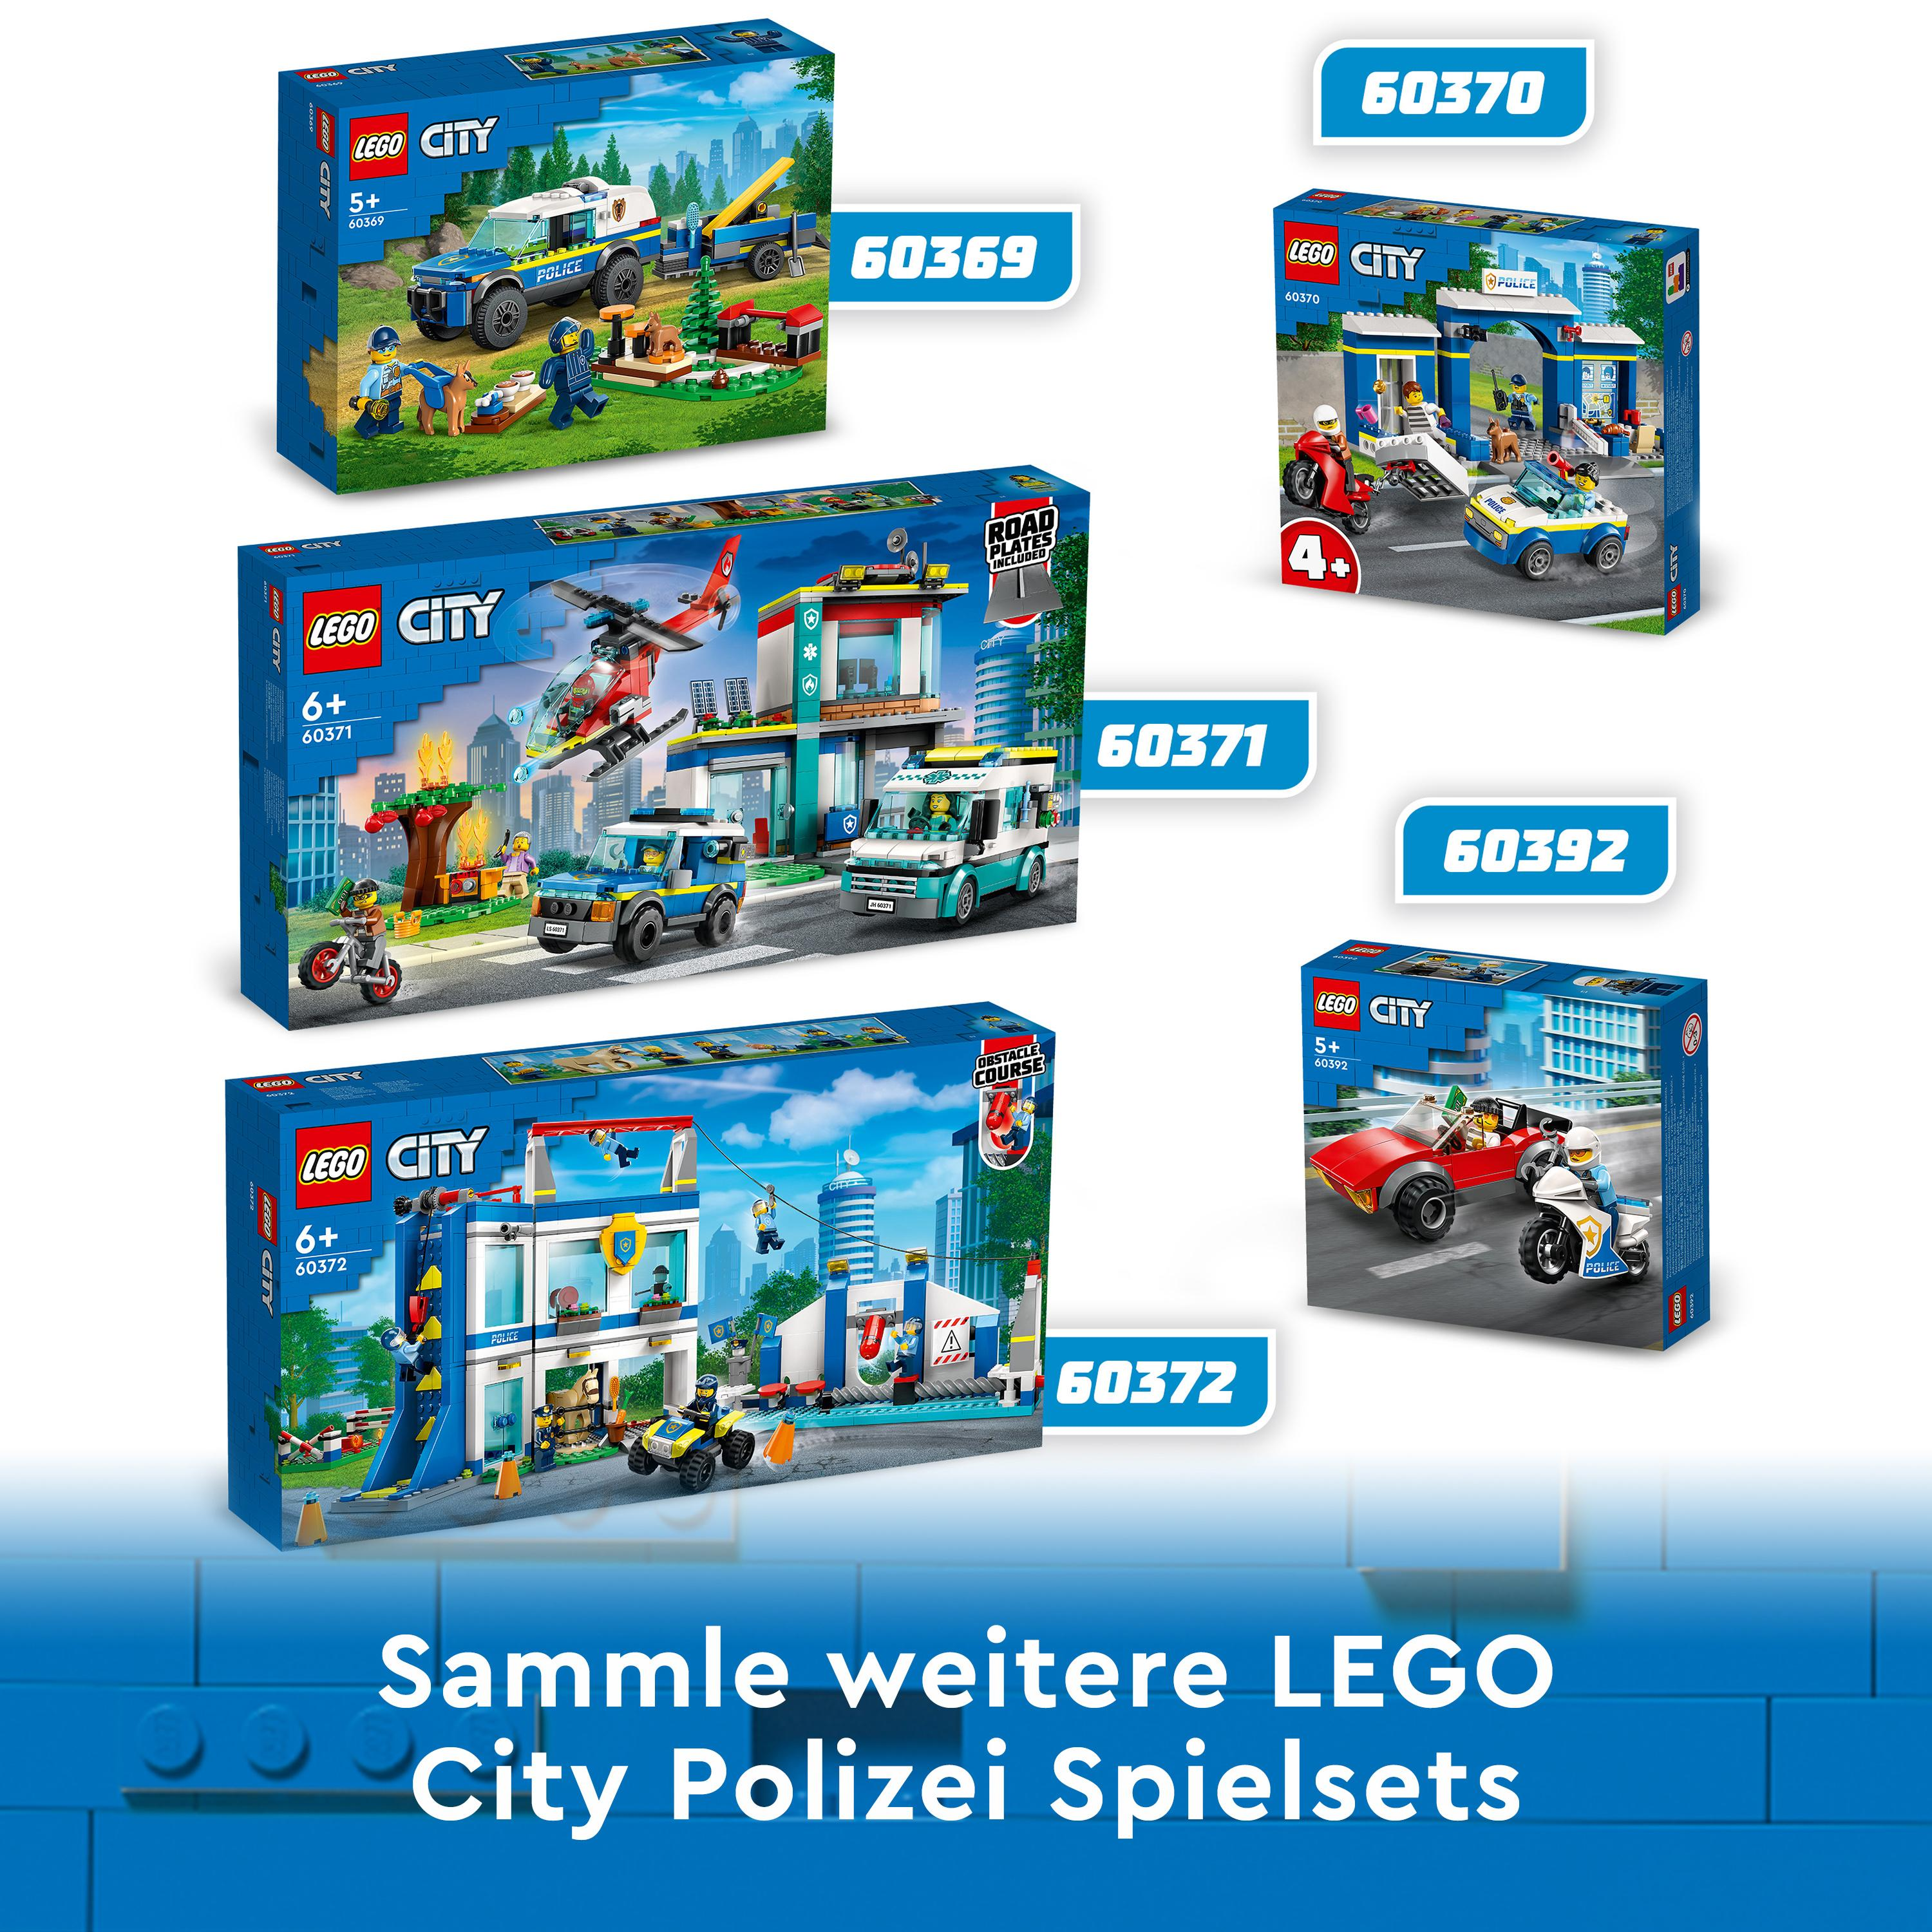 LEGO City 60372 Polizeischule Bausatz, Mehrfarbig